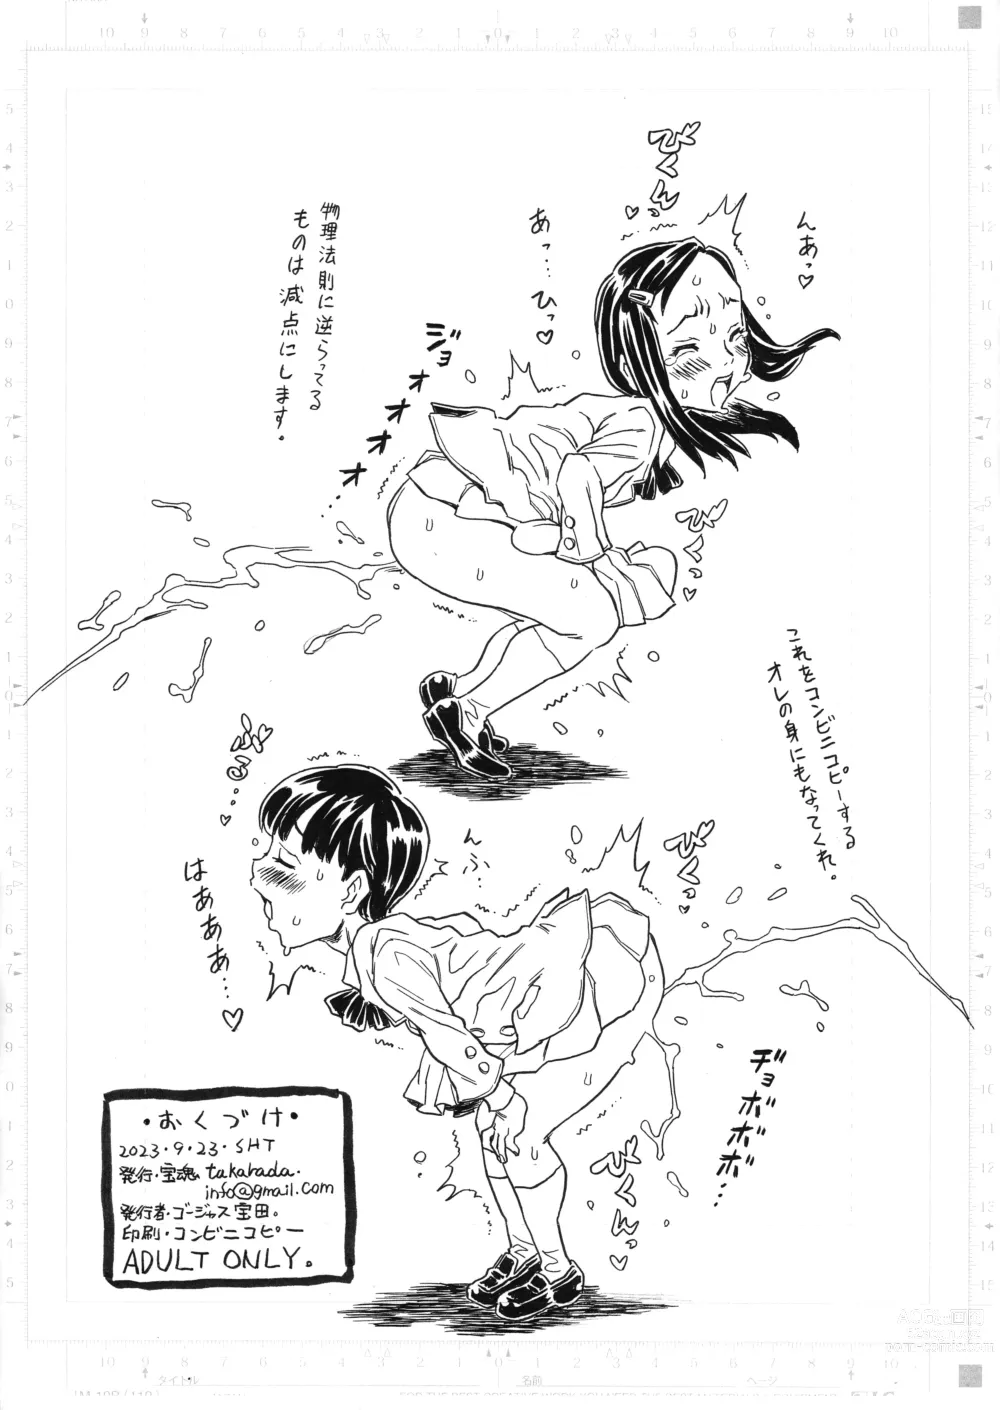 Page 6 of doujinshi Tsui ni Oshieyou, Takarada no Jinsei Saidai no H Taiken o.